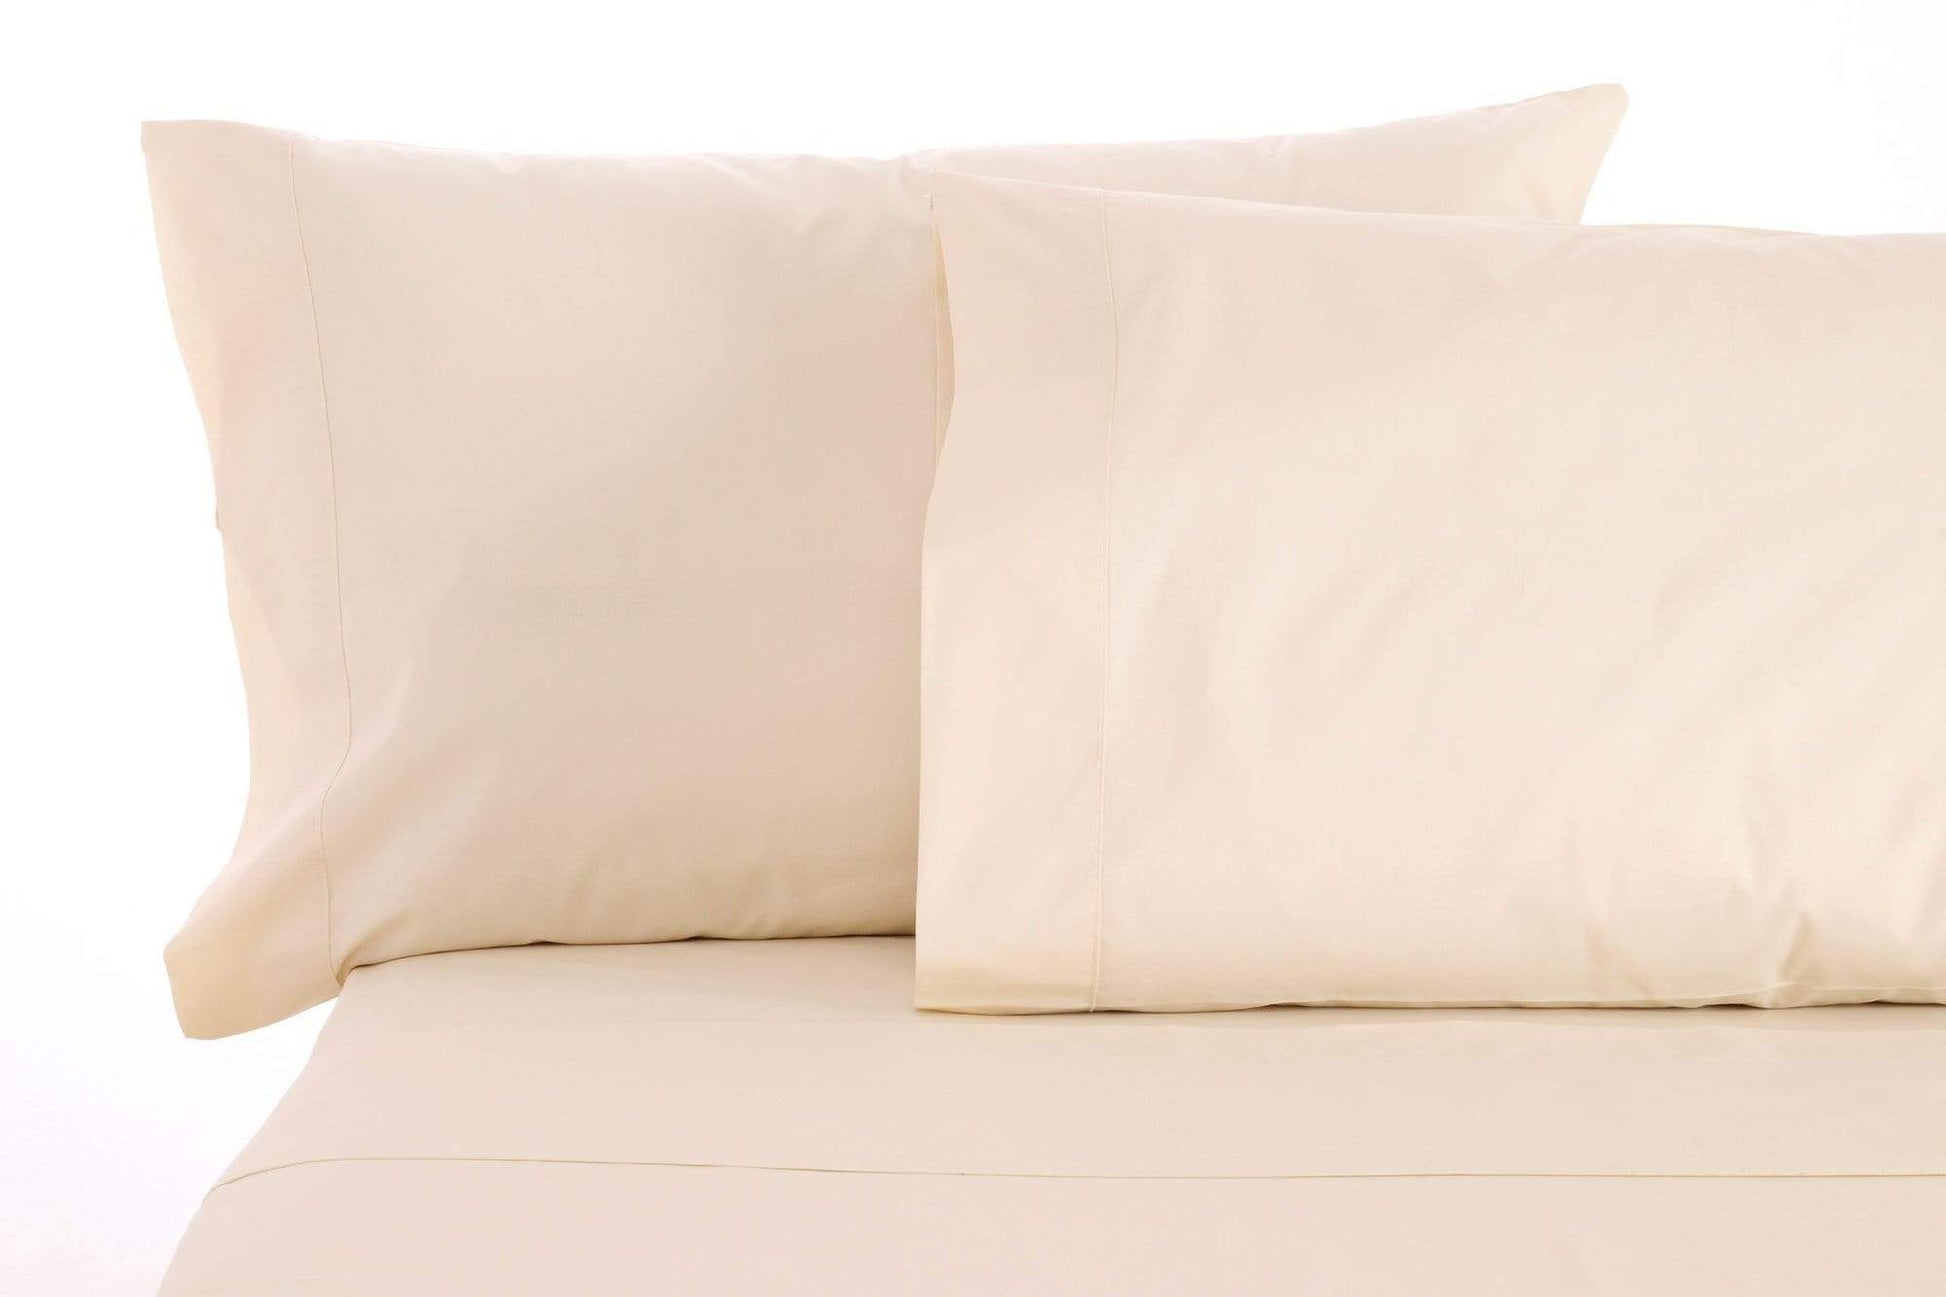 Sheet Sets Organic Sheet Set by Sleep & Beyond Twin XL Sheet Set / Ivory Sleep & Beyond